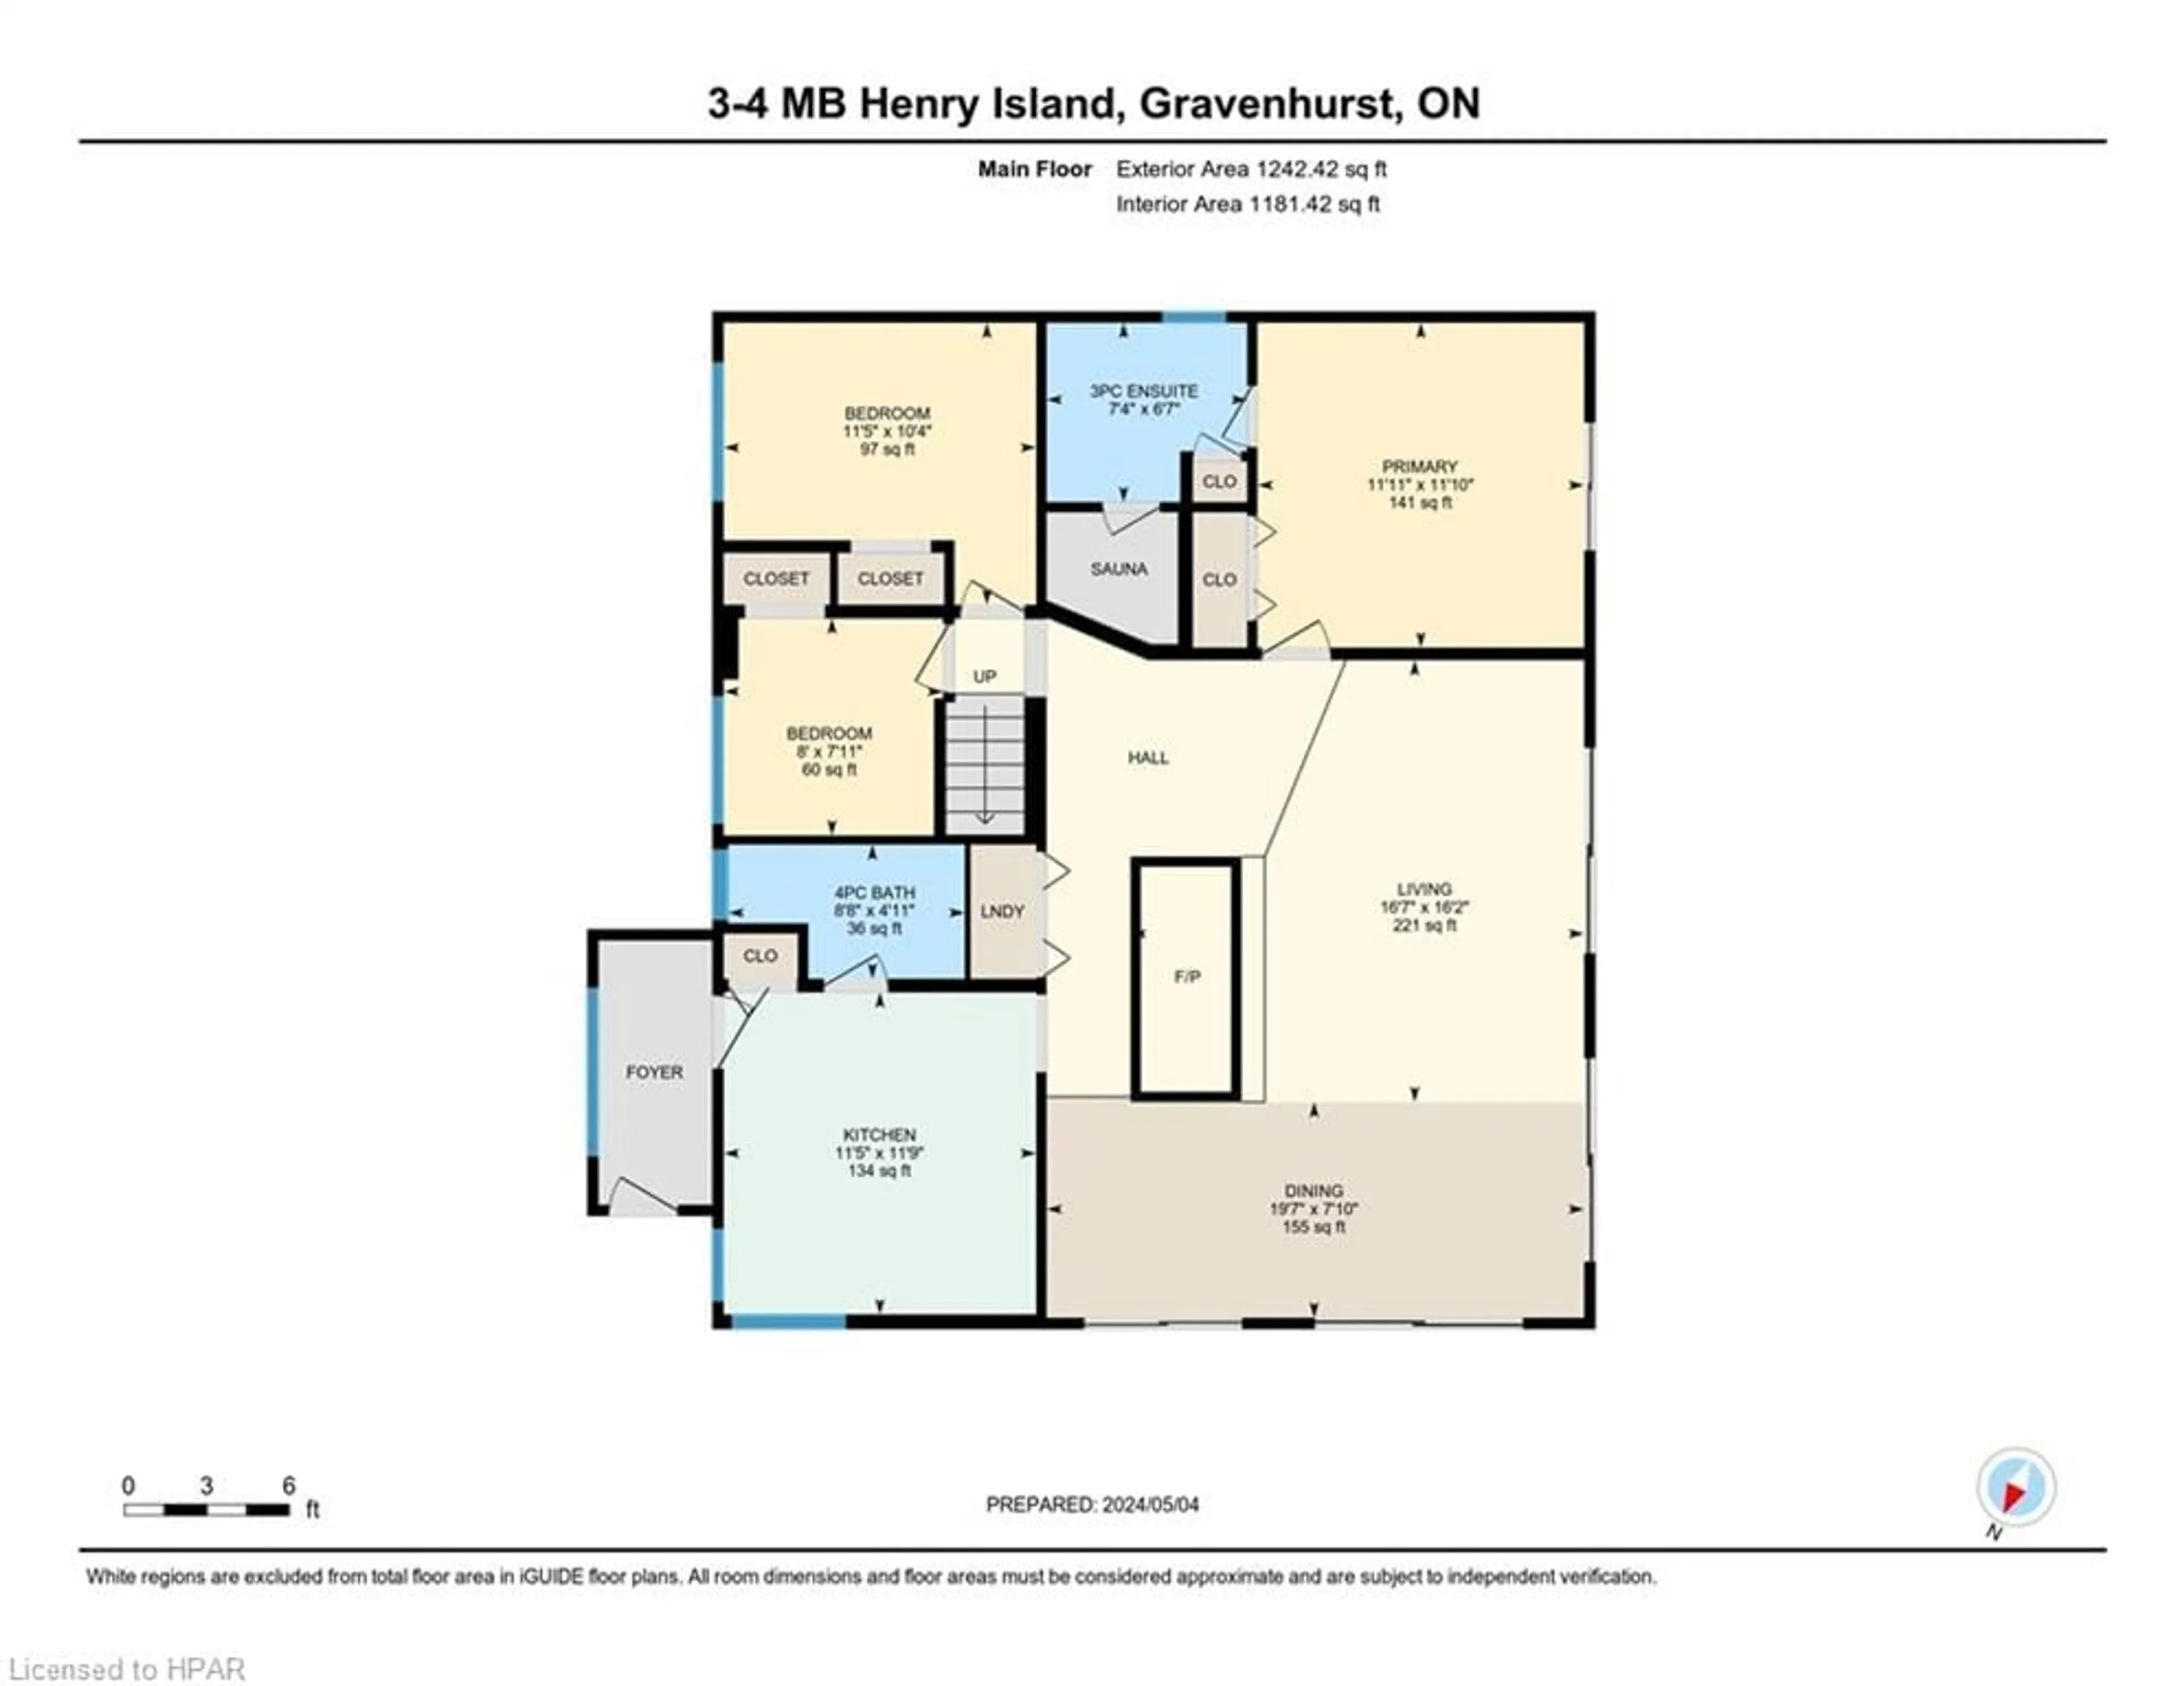 Floor plan for 3-4 MB Henry Island, Gravenhurst Ontario P1P 1R1